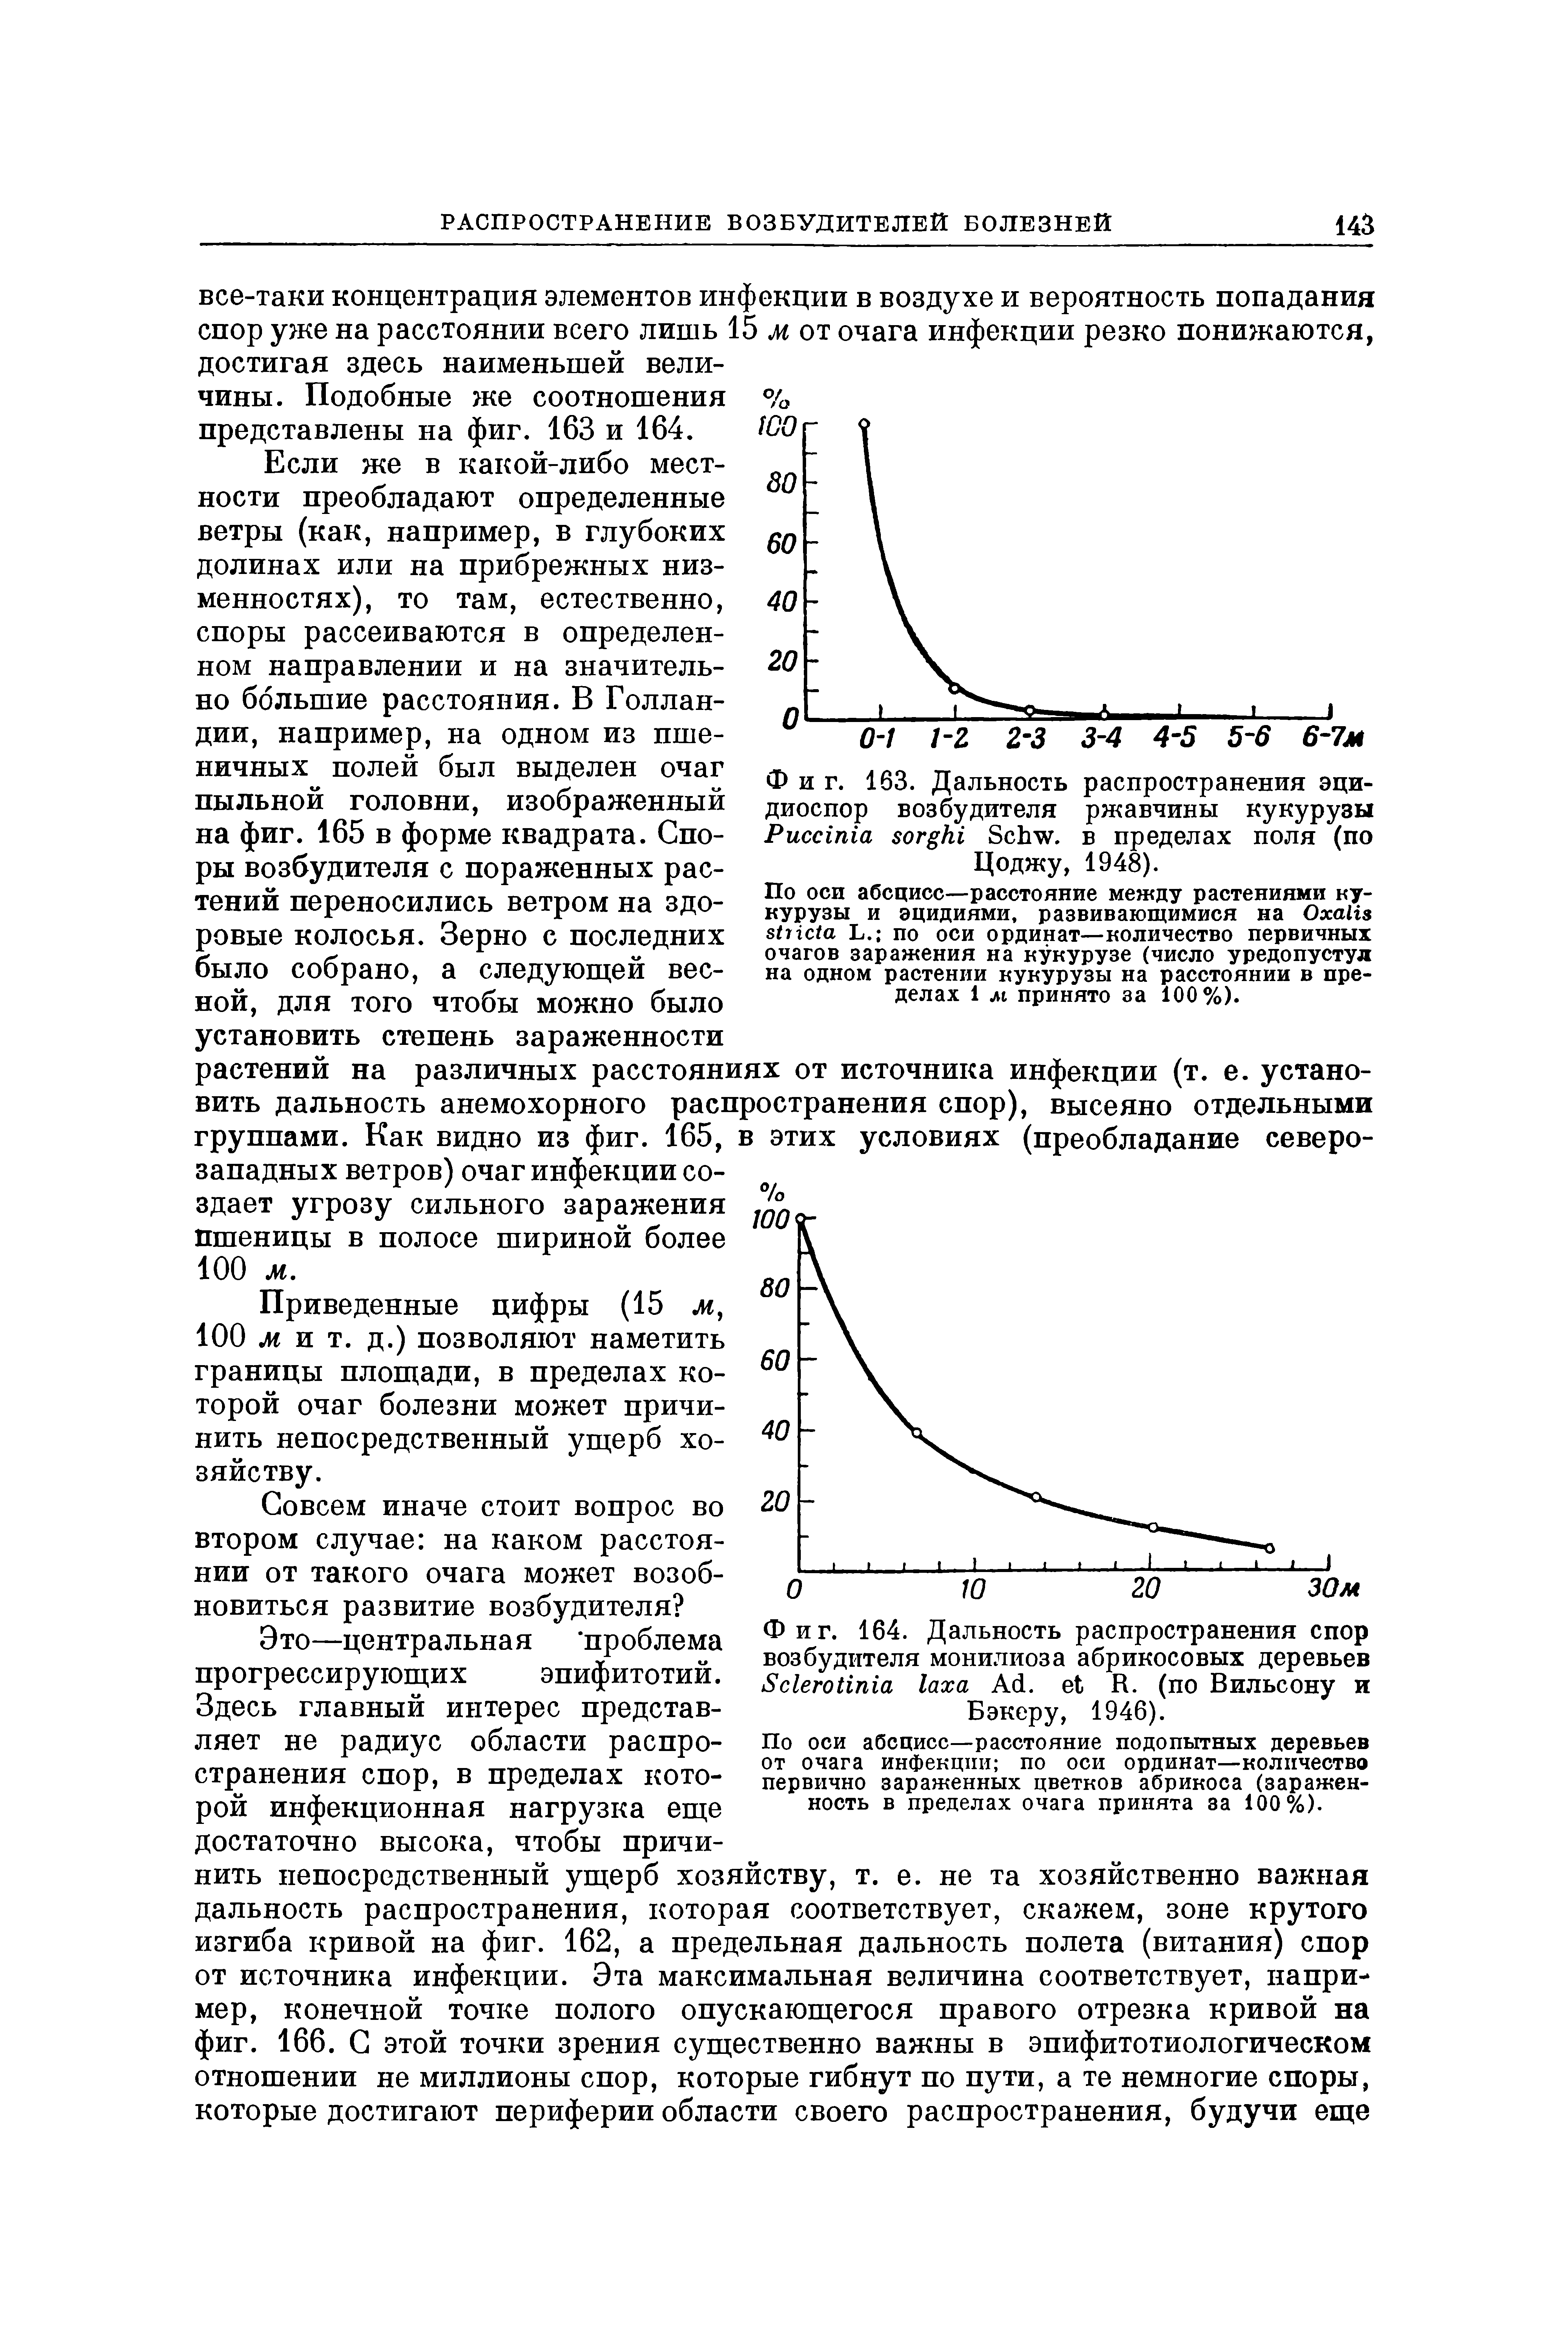 Фиг. 164. Дальность распространения спор возбудителя монилиоза абрикосовых деревьев S A . R. (по Вильсону и Бэкеру, 1946).